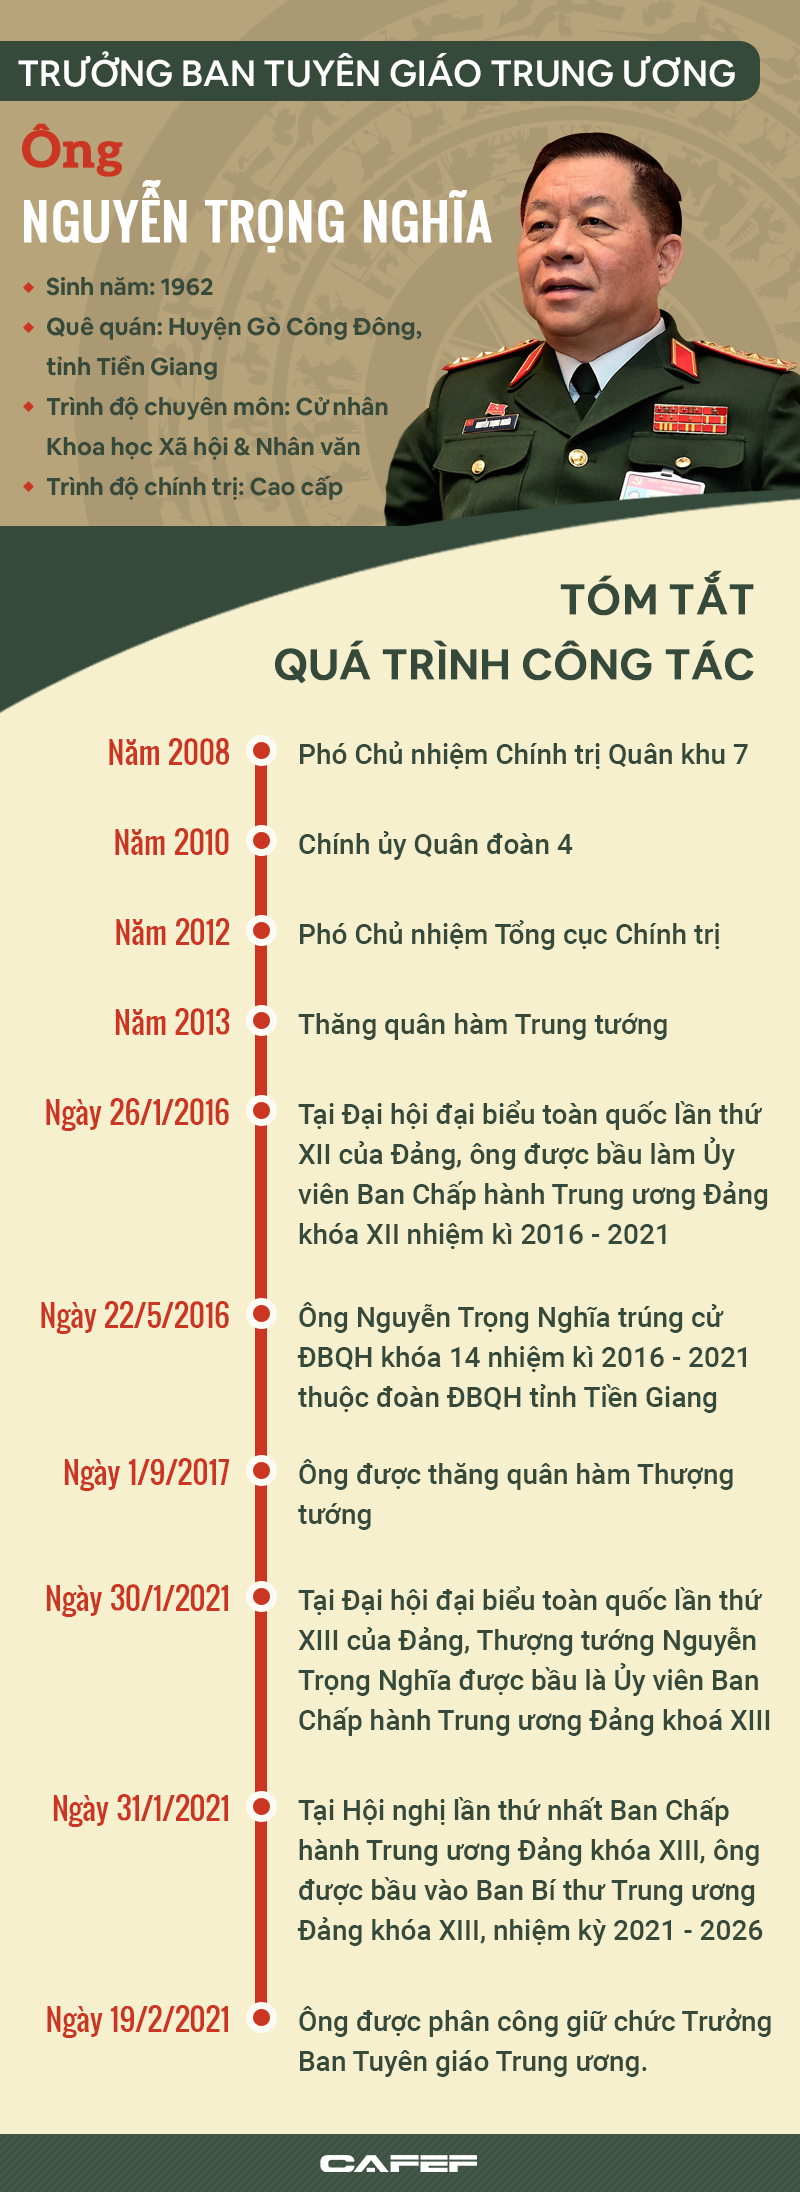 INFOGRAPHIC: Chân dung tân Trưởng ban Tuyên giáo Trung ương Nguyễn Trọng Nghĩa - Ảnh 1.